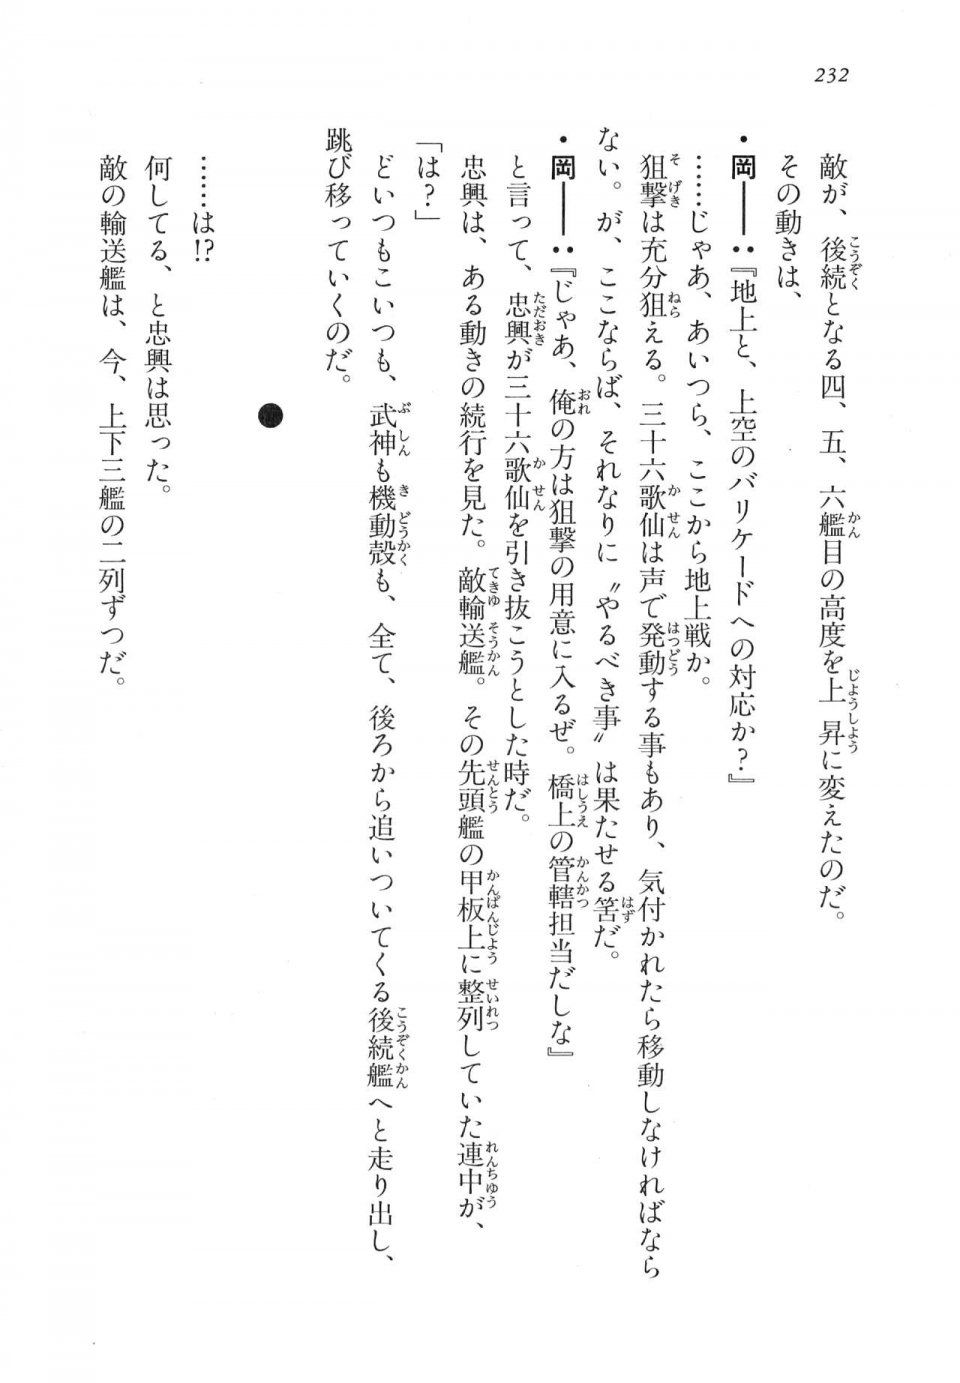 Kyoukai Senjou no Horizon LN Vol 17(7B) - Photo #232